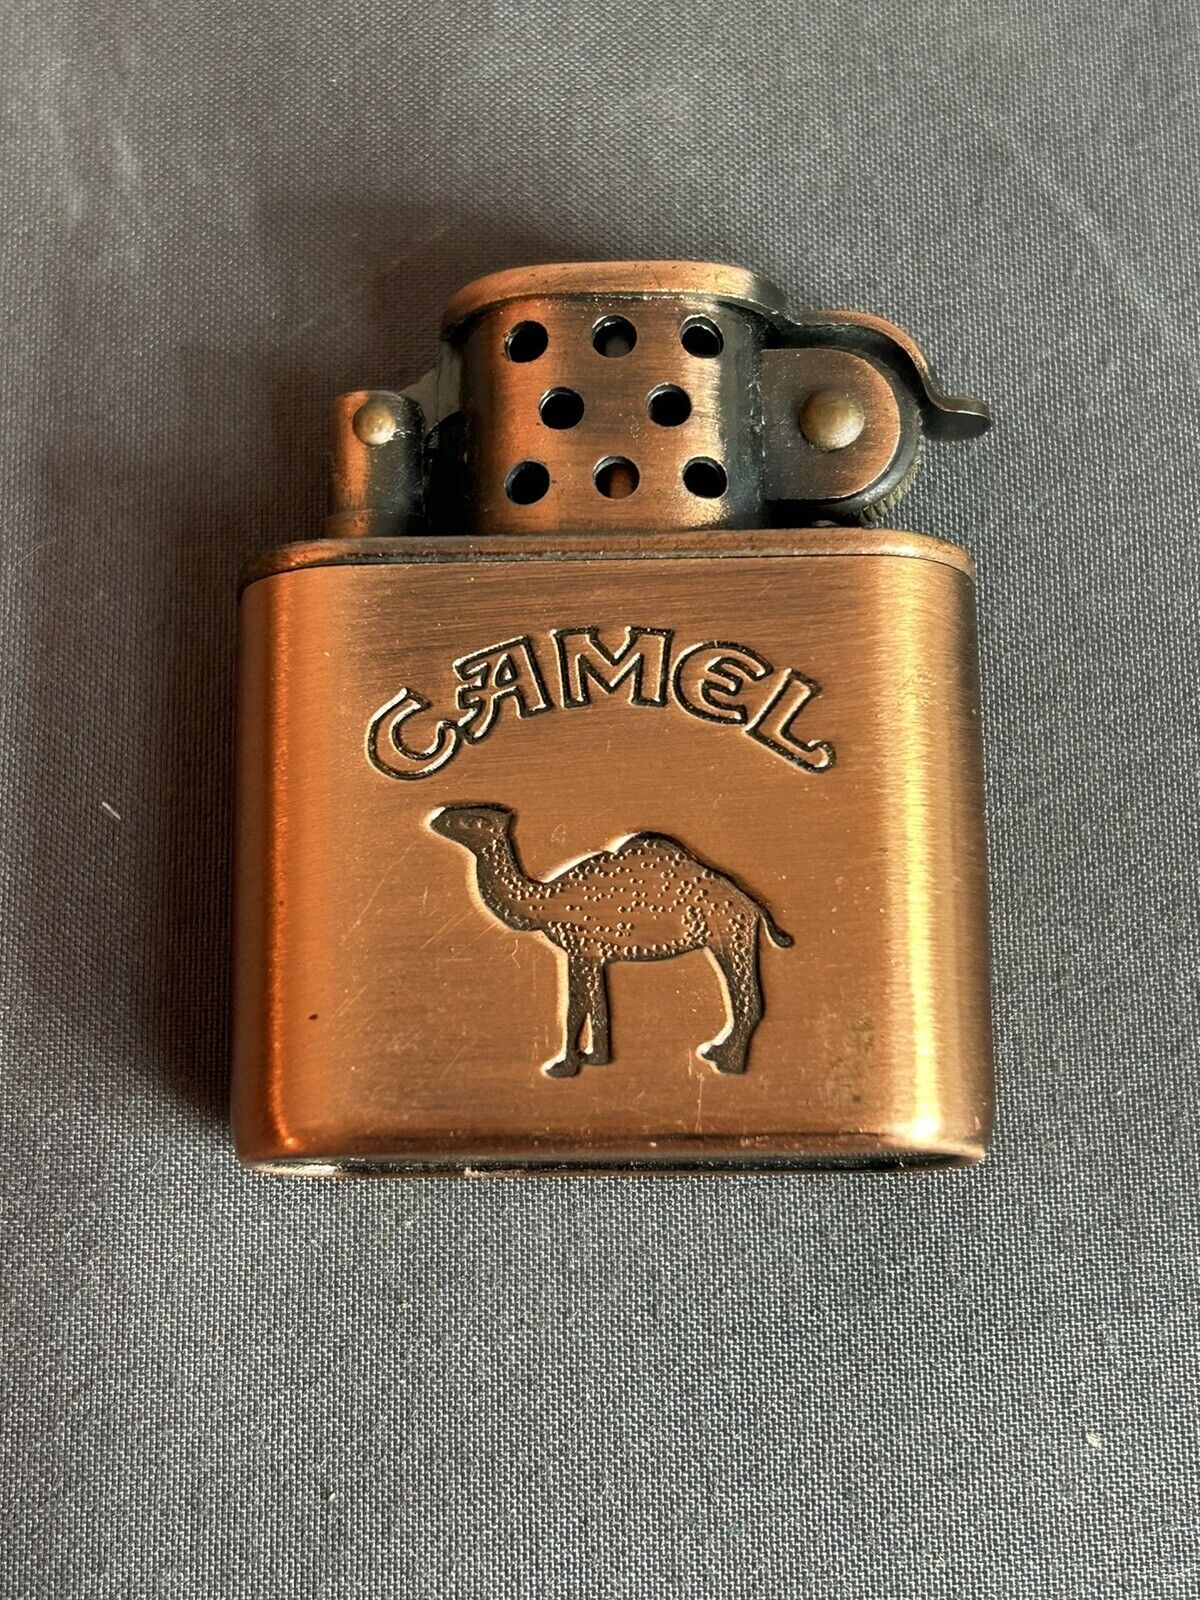 Vintage Camel Cigarettes Brushed Copper Lighter Working Condition/Needs Fluid